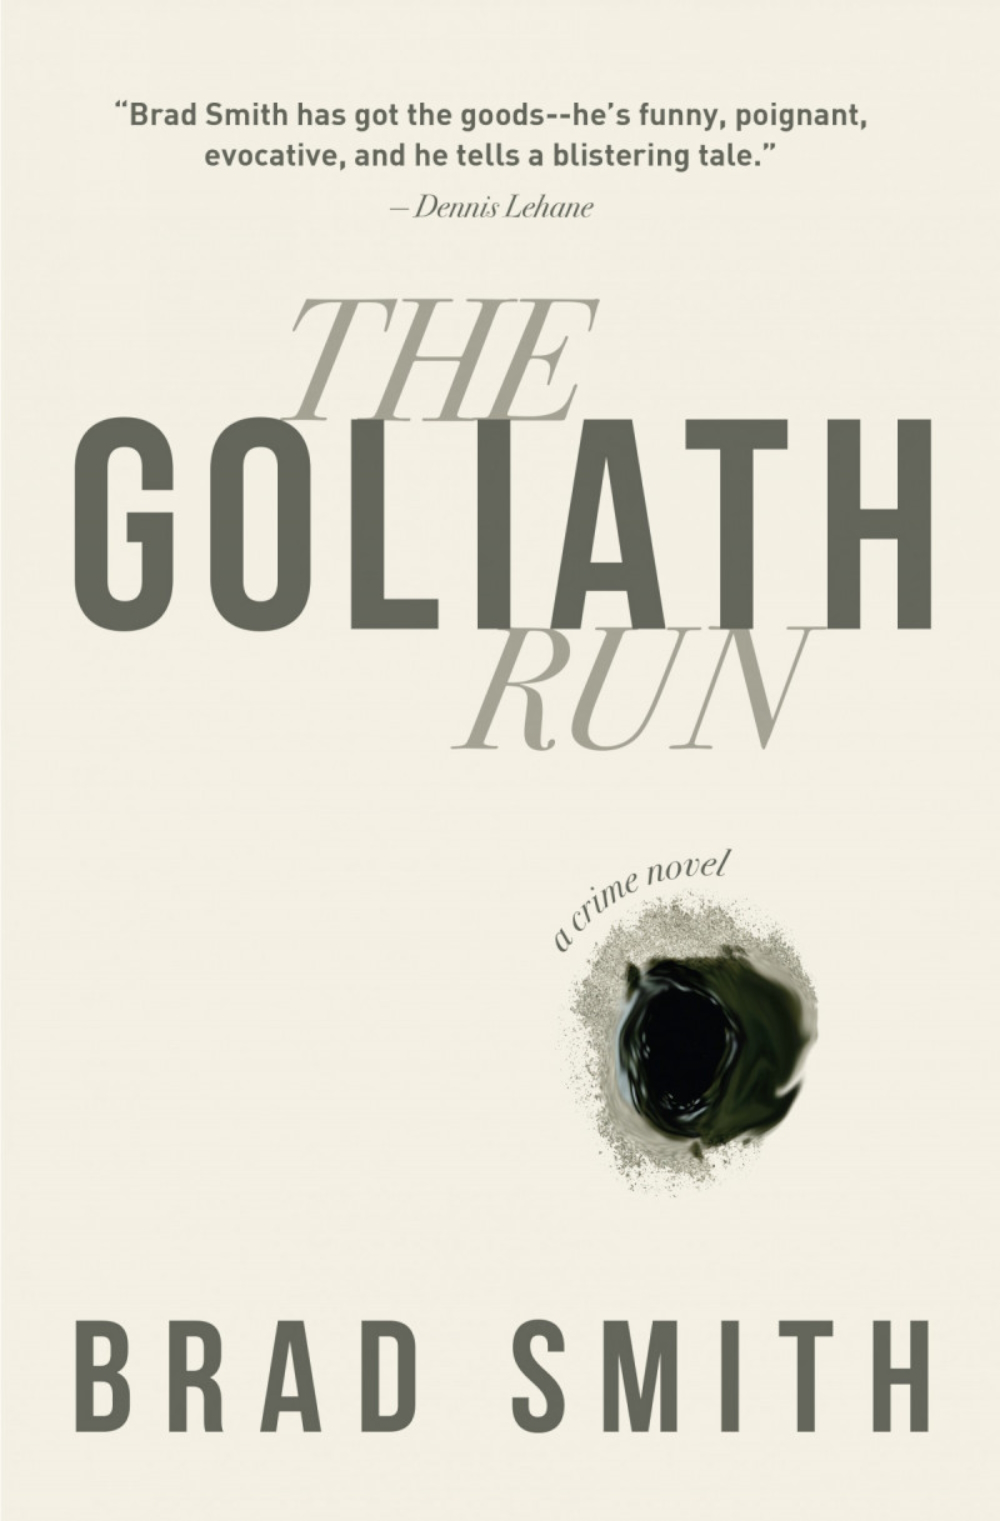 THE GOLIATH RUN (2020): Crime novel explores 